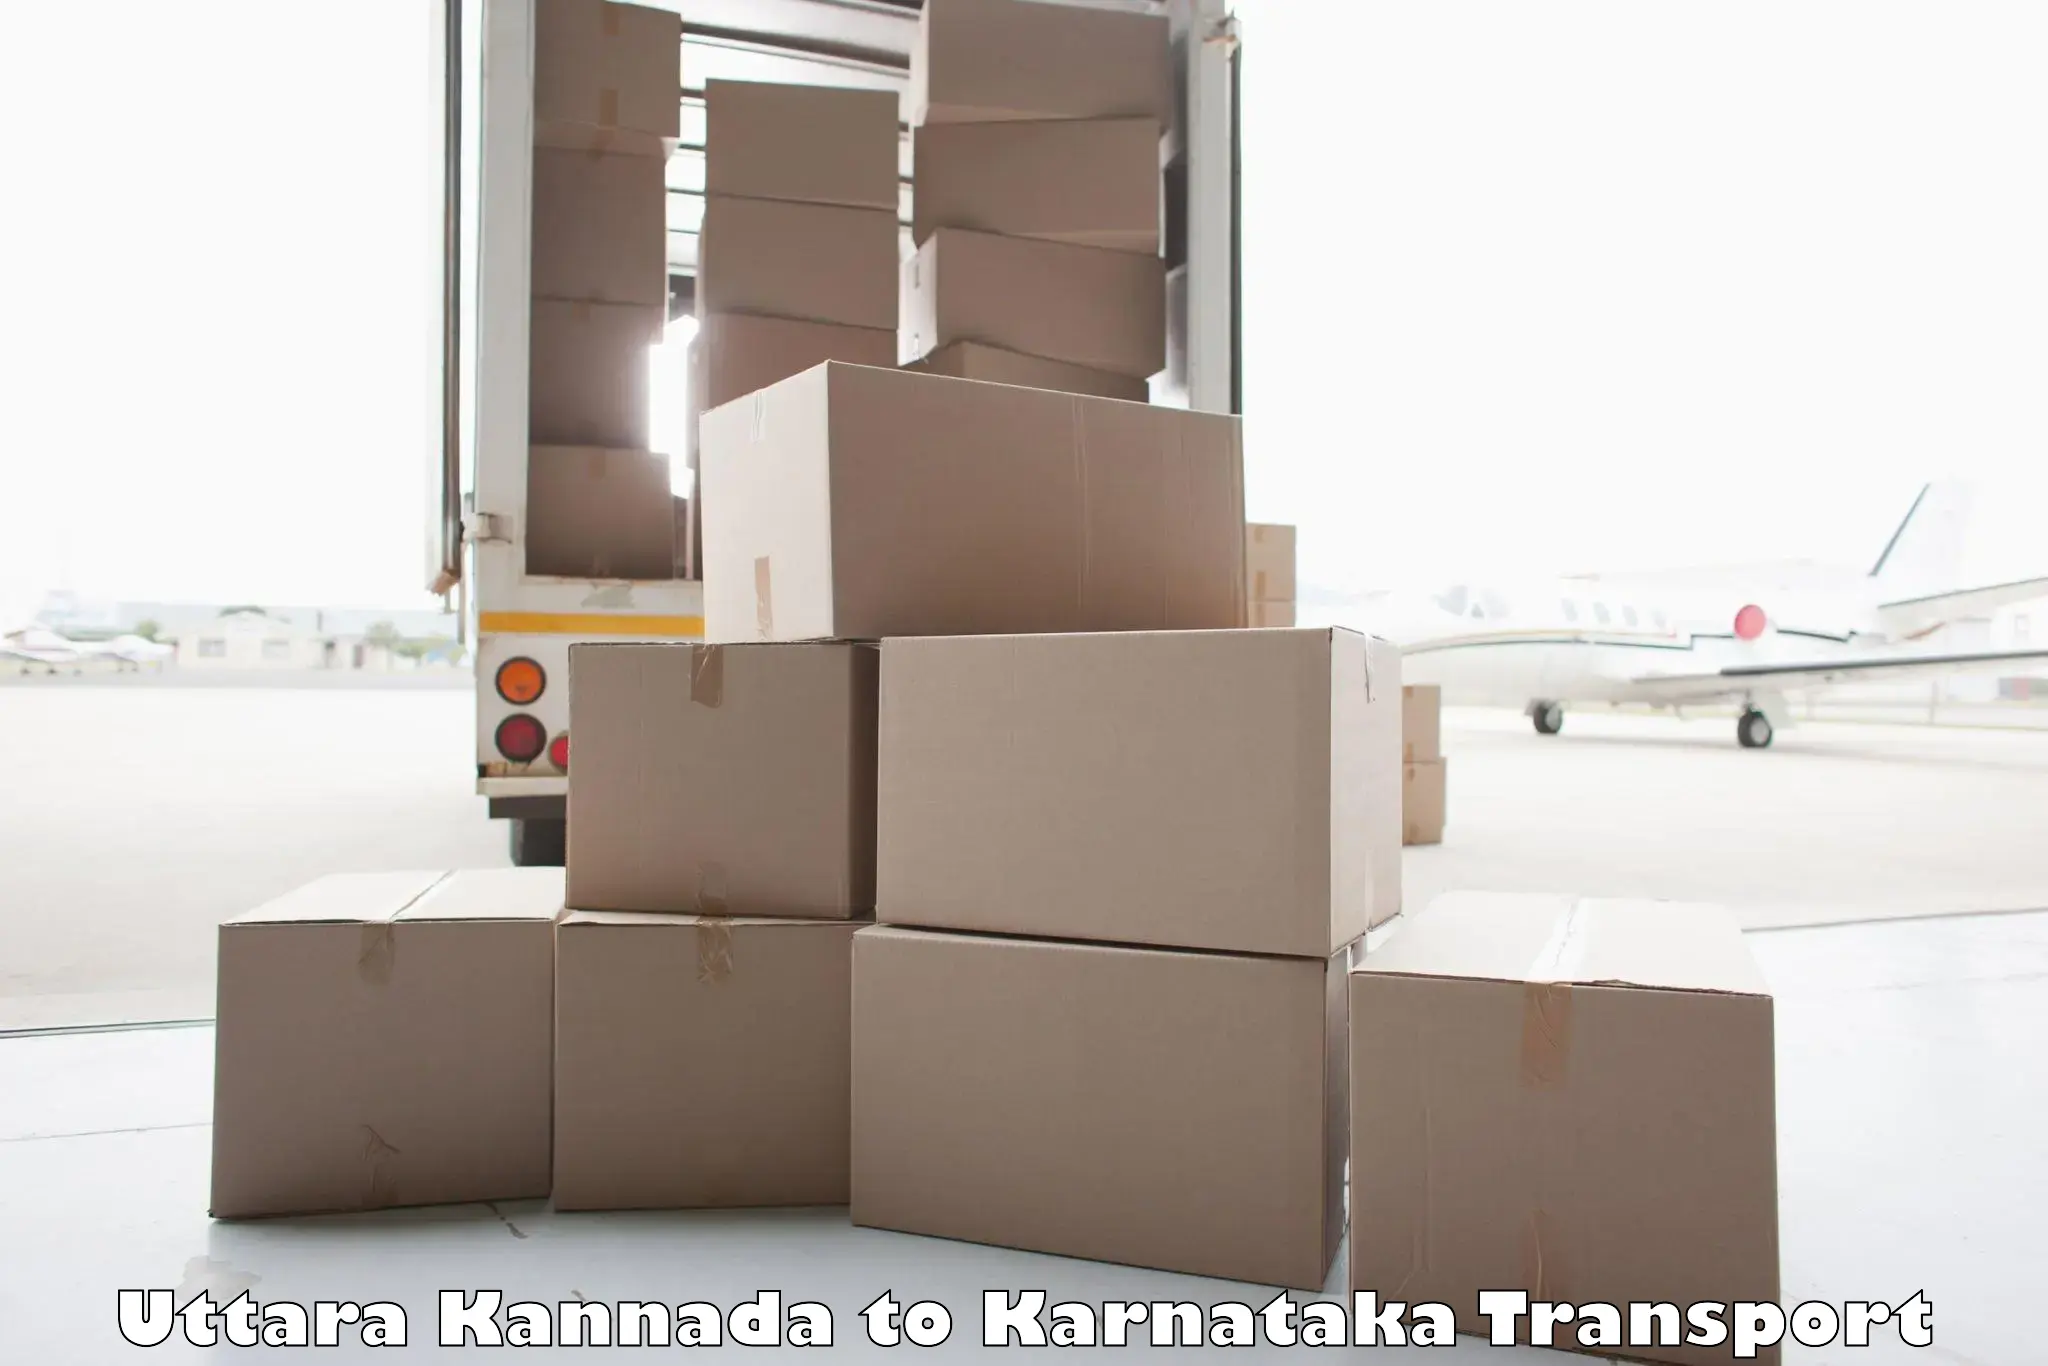 Nearest transport service Uttara Kannada to Sindhanur